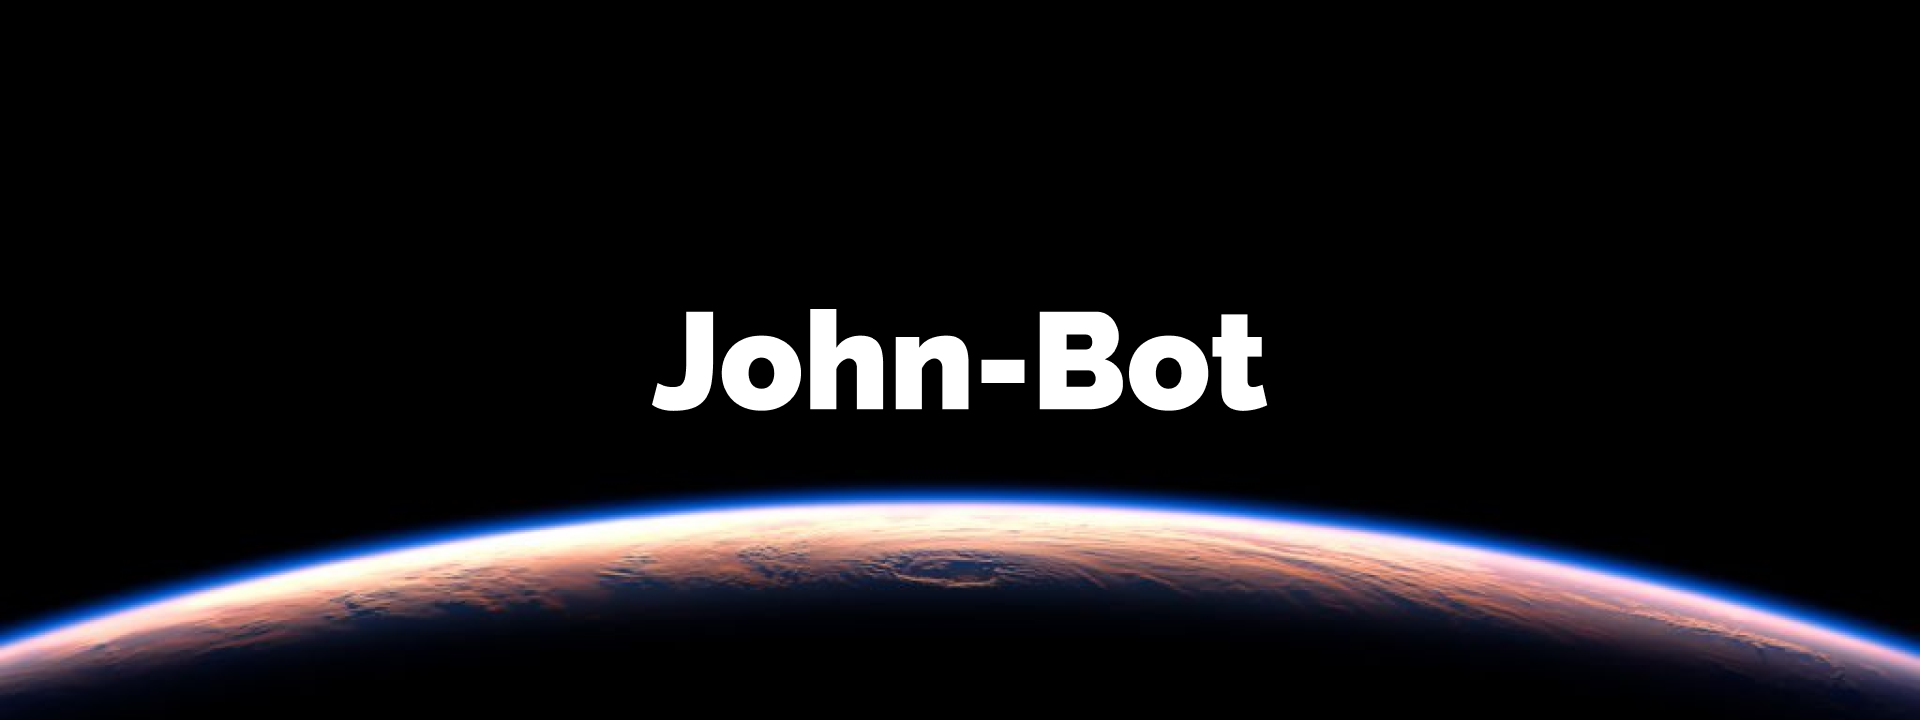 John-Bot